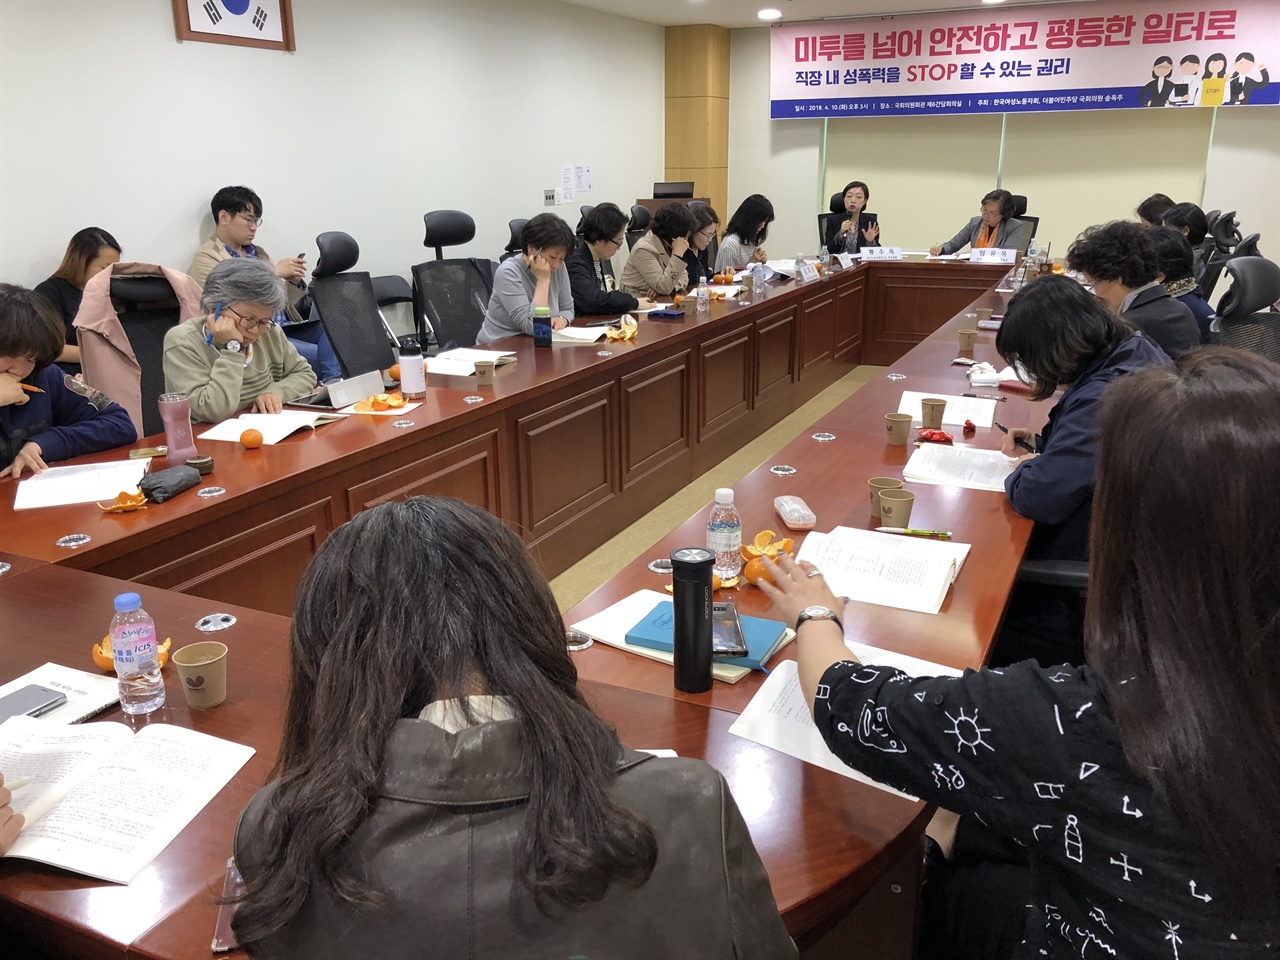 지난 4월 10일 오후 3시 <미투를 넘어 안전하고 평등한 일터로> 토론회가 한국여성노동자회와 더불어민주당 송옥주 의원실 주최로 열렸다. 황수옥 한국노동사회연구소 연구위원이 발표하고 있다.